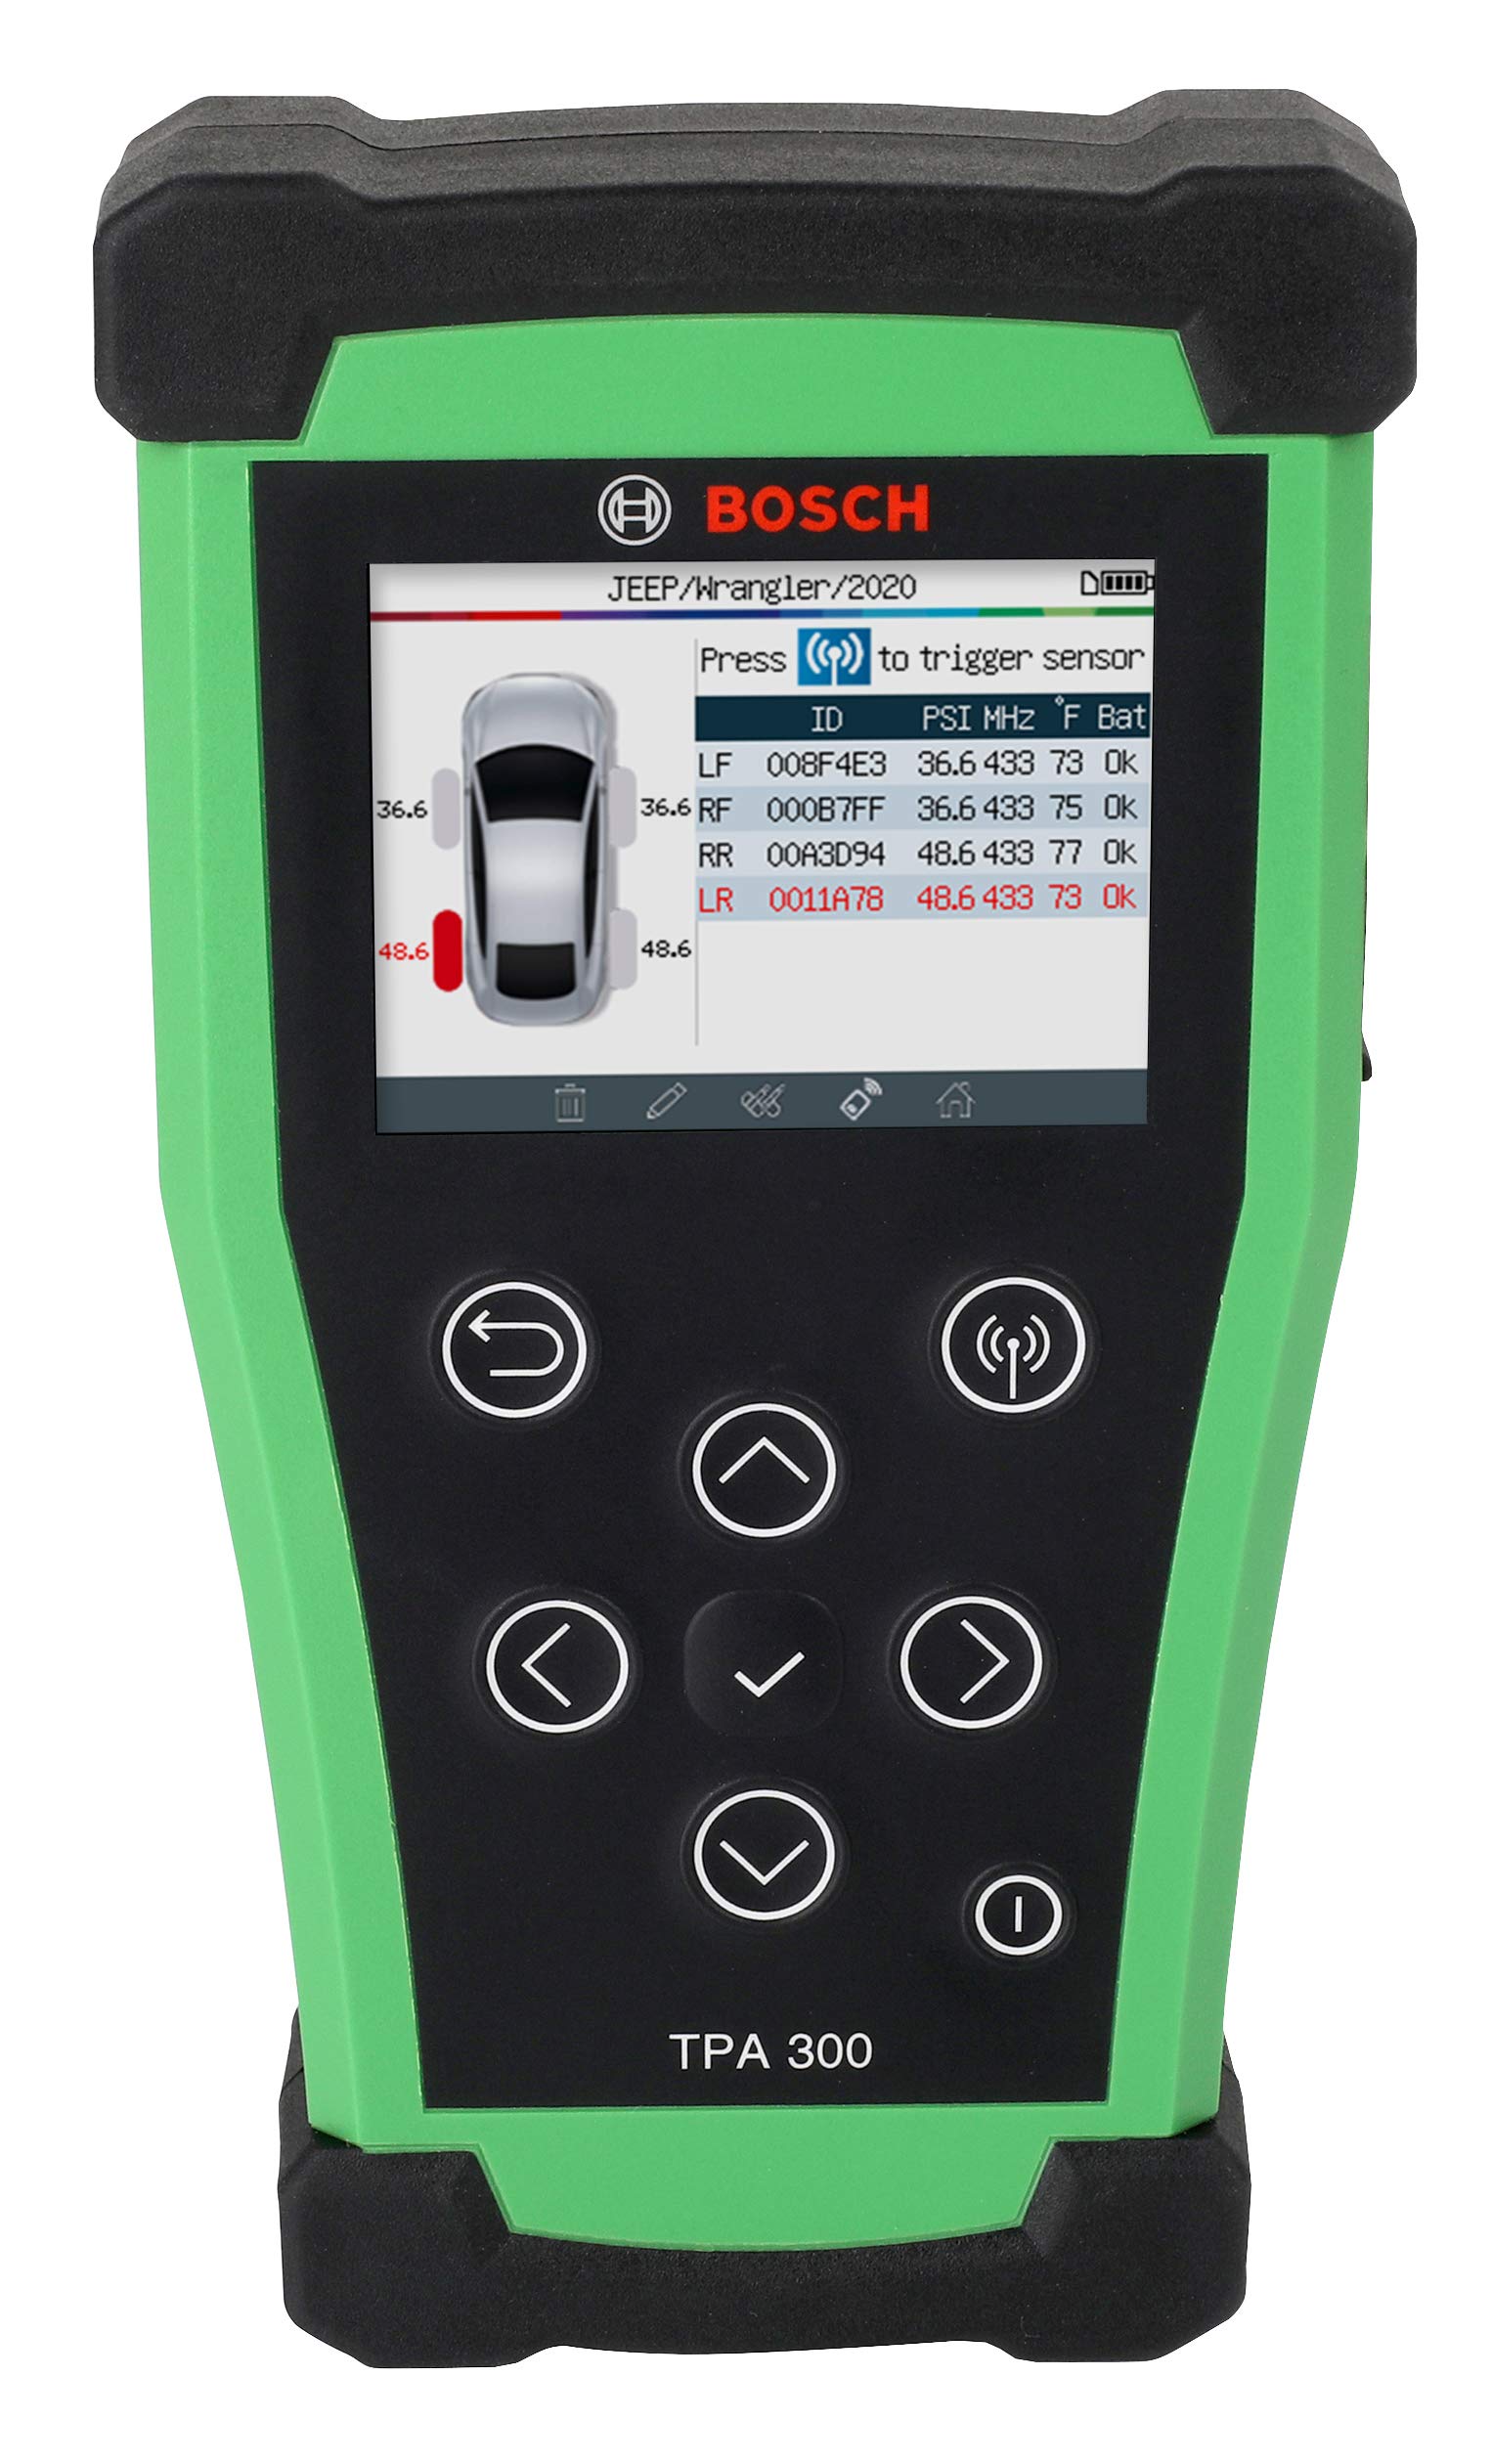 Bosch 3934 TPA 300 TPMS Programmierung, Aktivierung und ECU Reset-Werkzeug – kompatibel mit Allen OE- und Aftermarket-Sensoren groß von Bosch